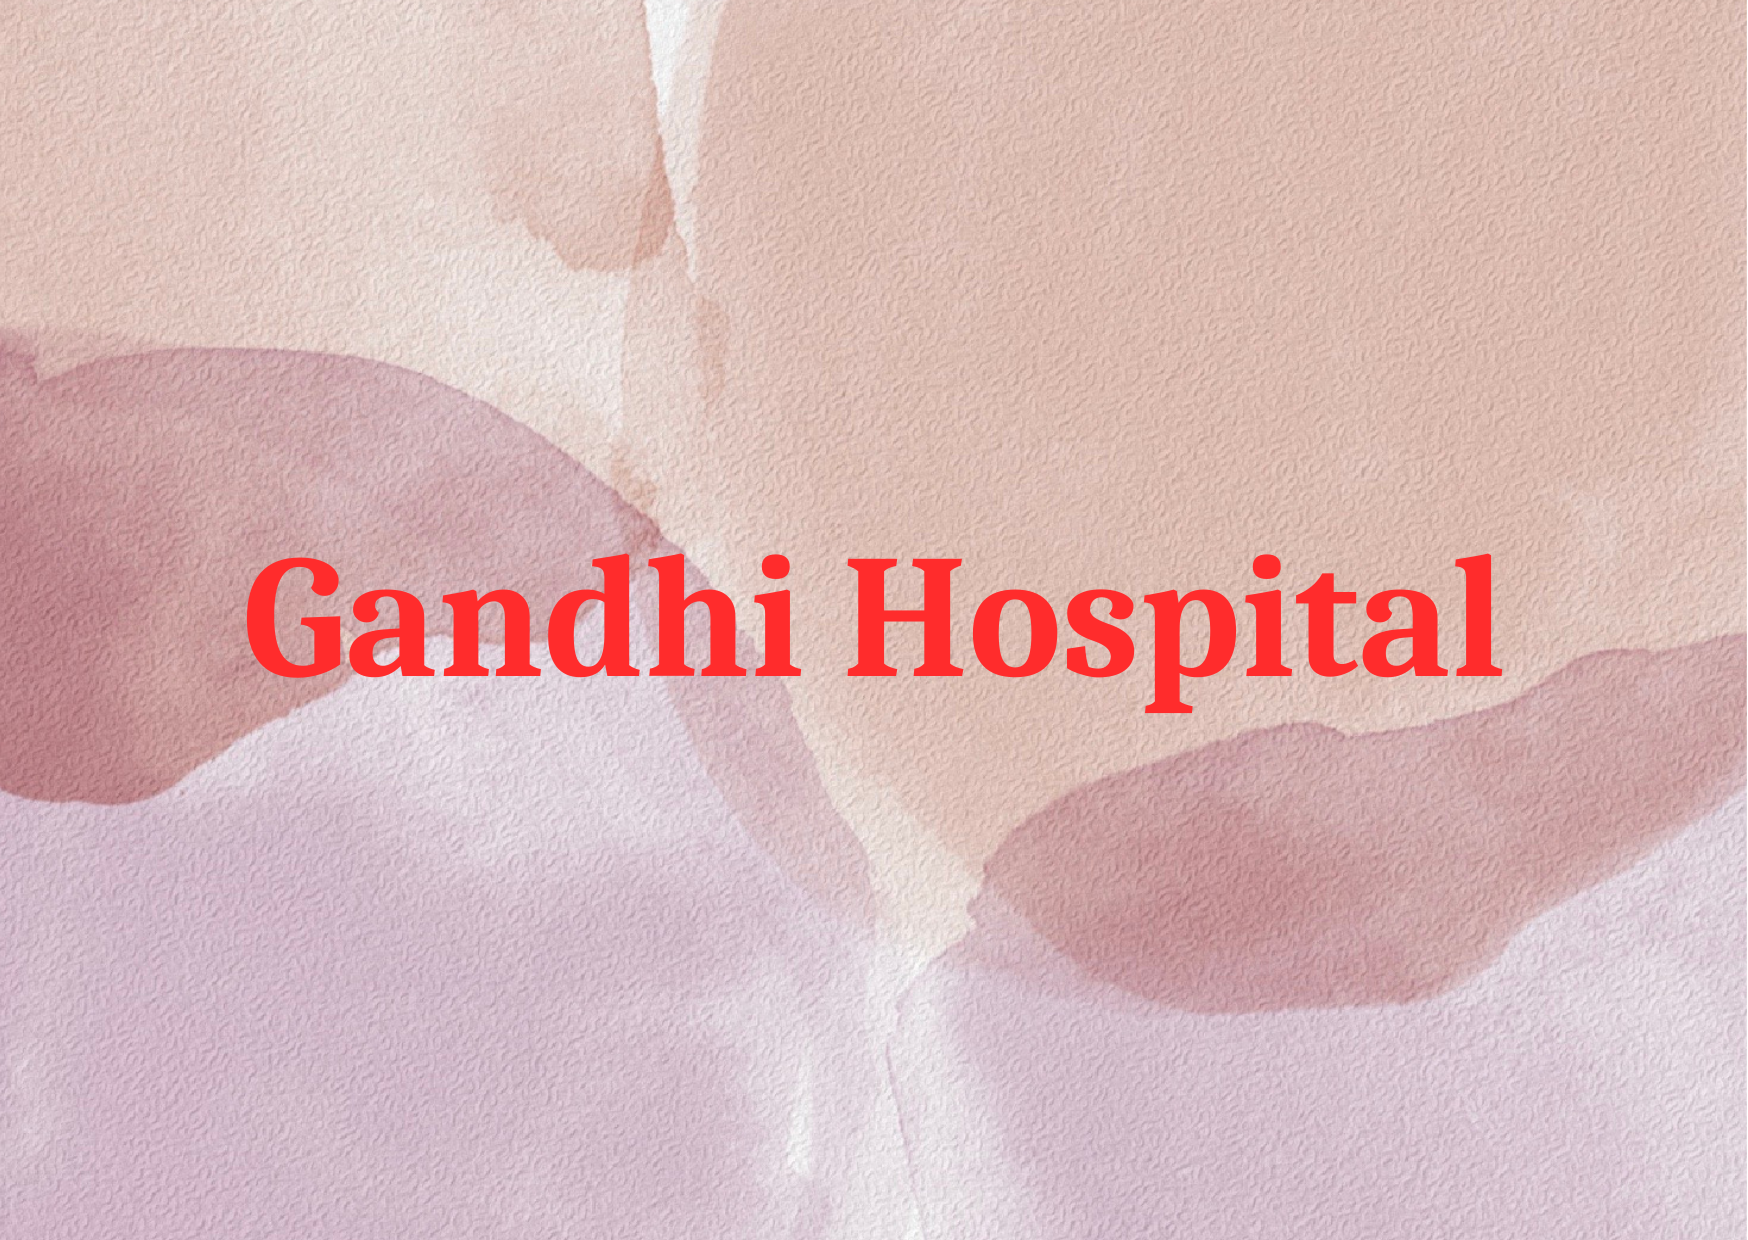 Gandhi Hospital 